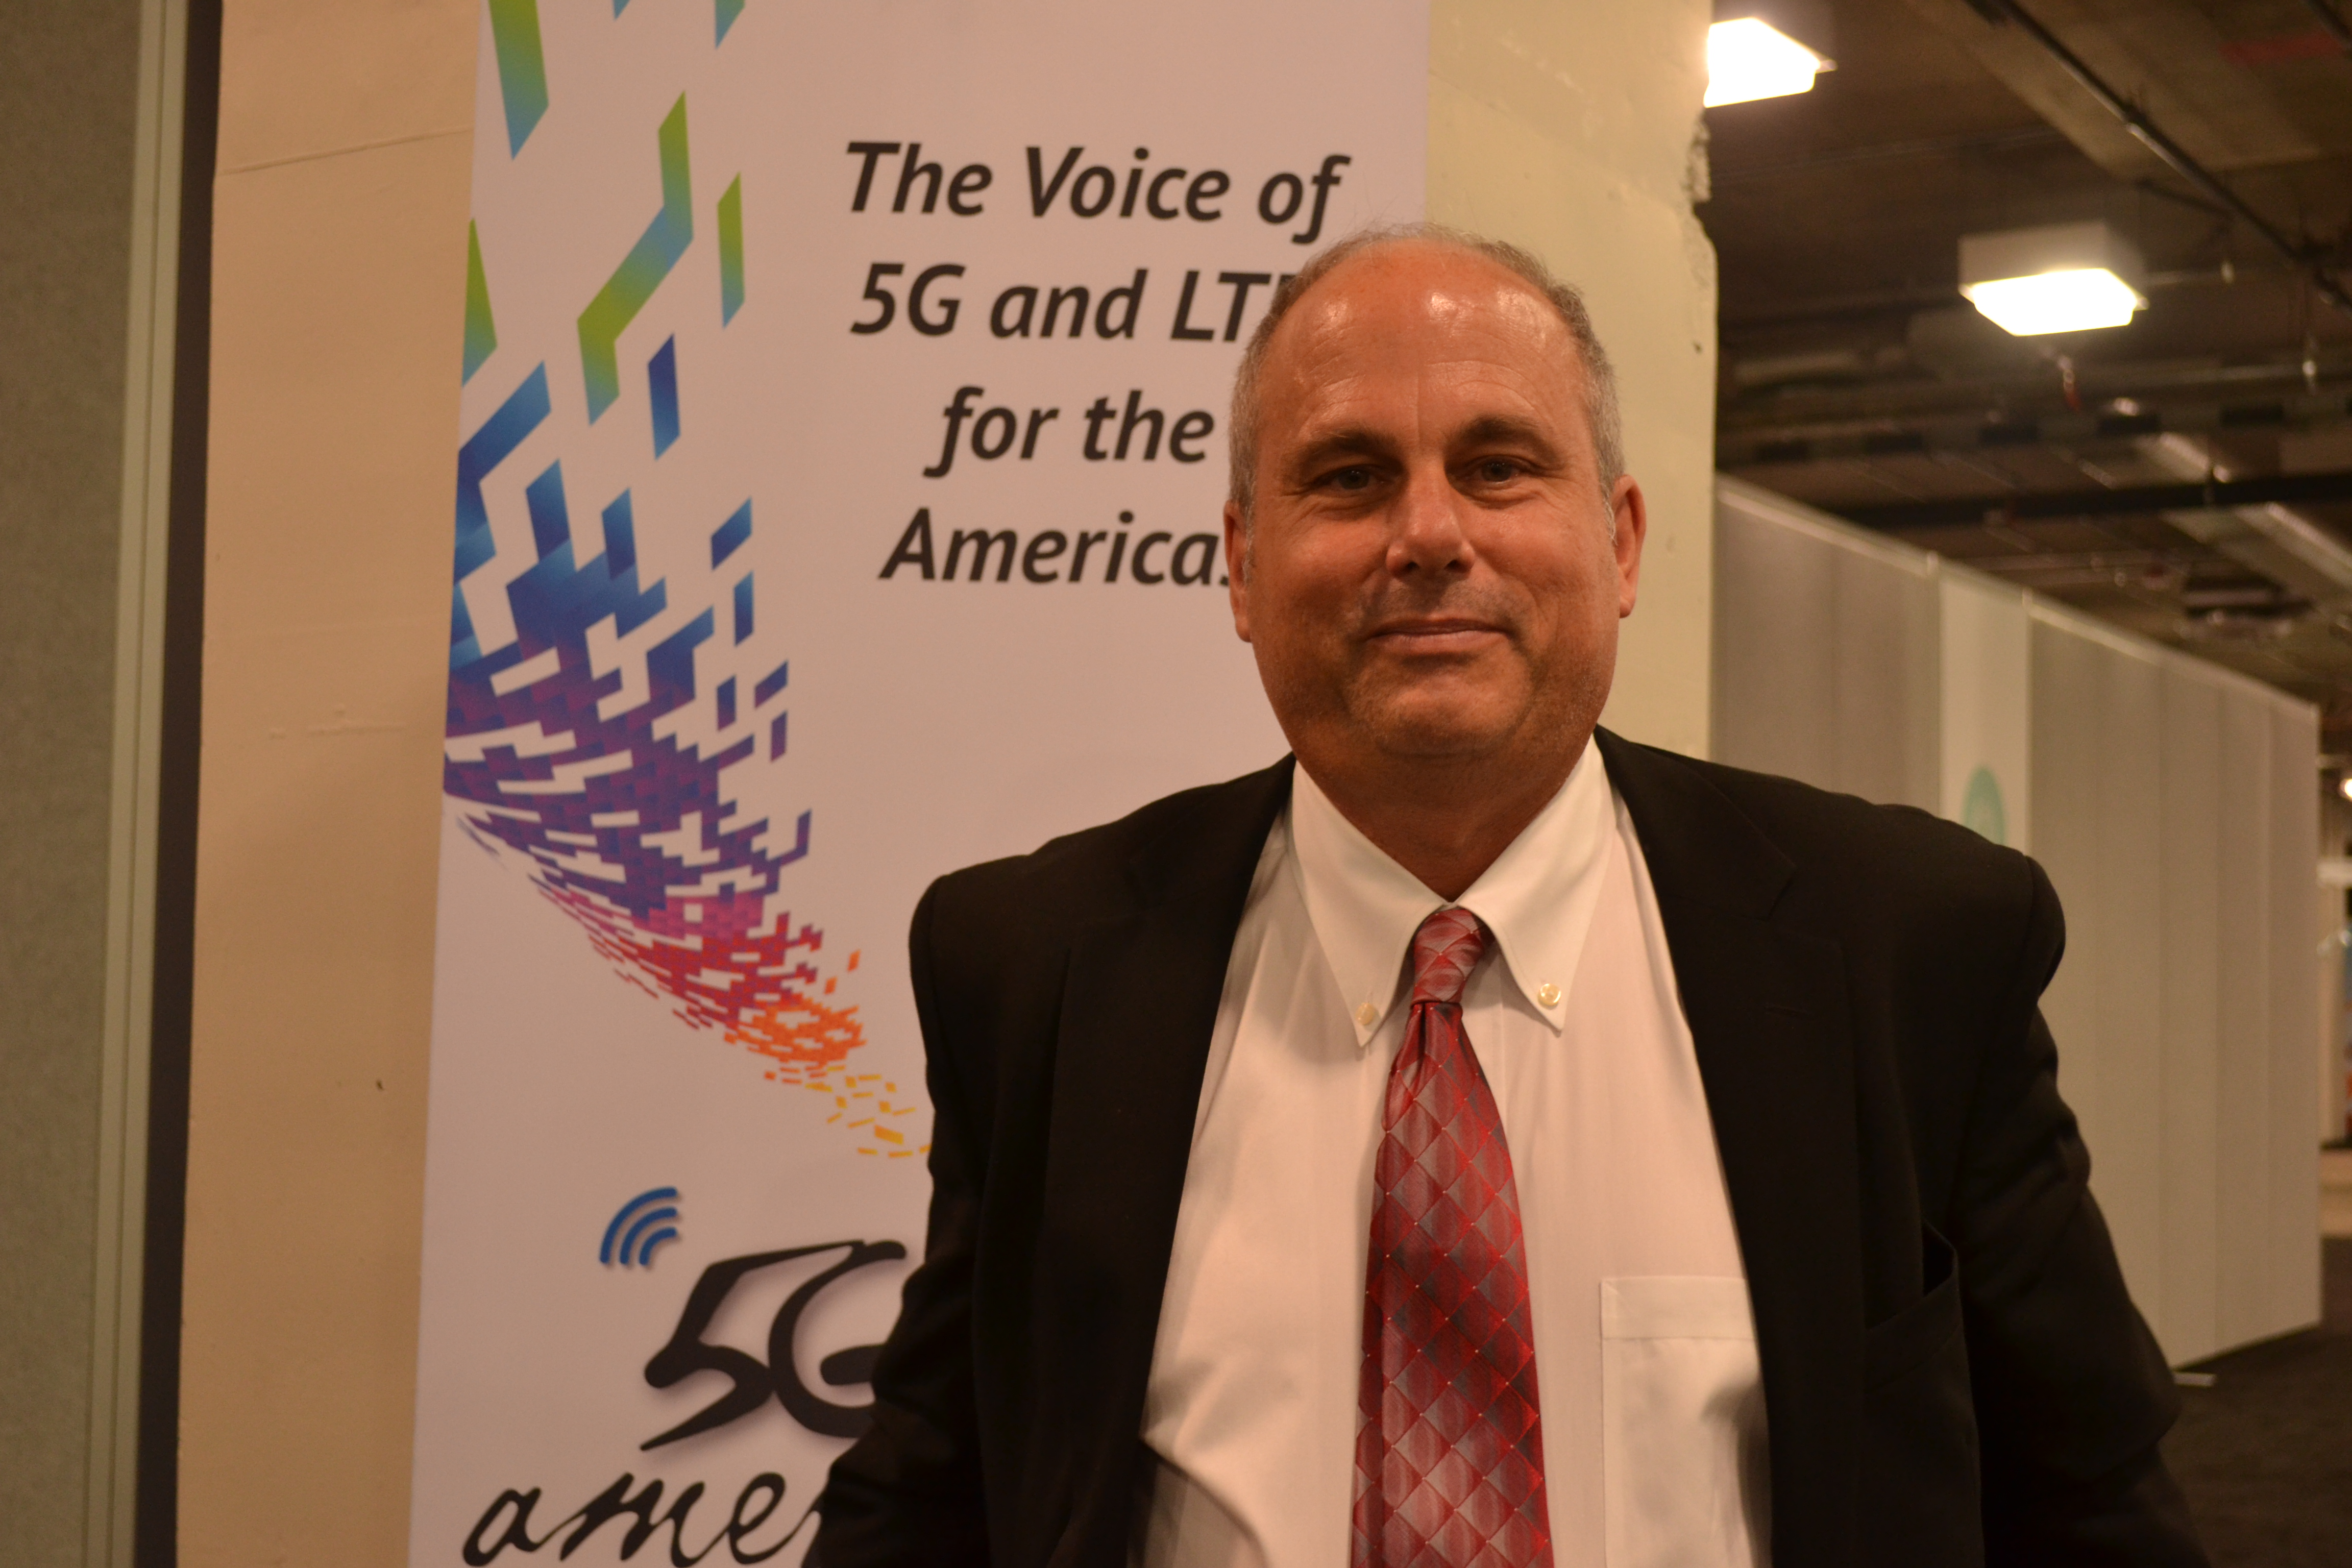 5G Americas advocates 5G & LTE at CTIA